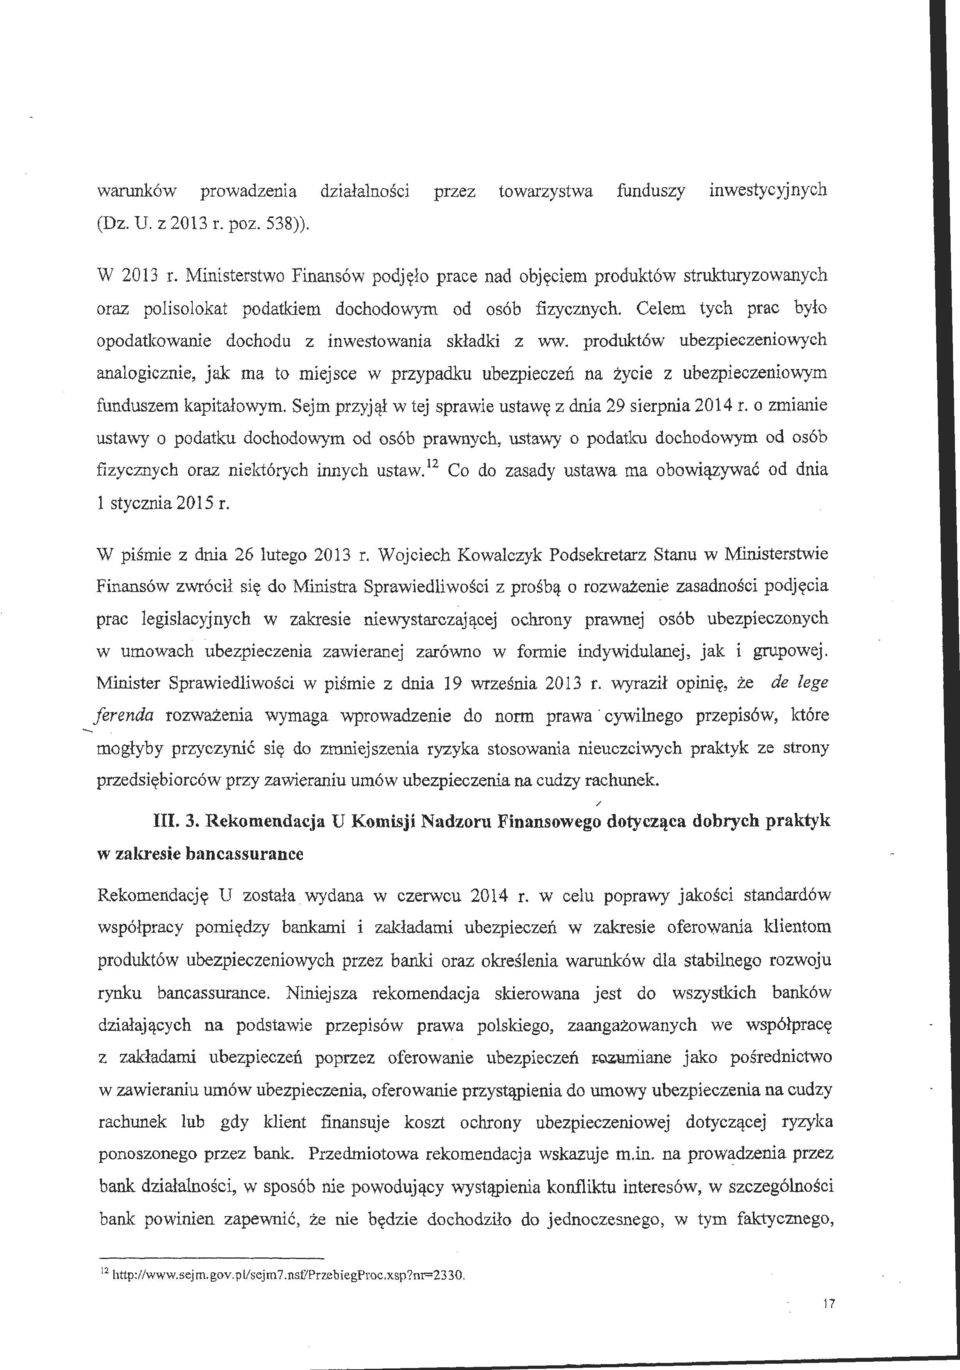 prduktów ubezpieczeniwych analgicznie, jak ma t miejsce w przypadku ubezpieczeń na życie z ubezpieczeniwym funduszem kapitałwym. Sejm przyjął w tej sprawie ustawę z dnia 29 sierpnia 2014 r.